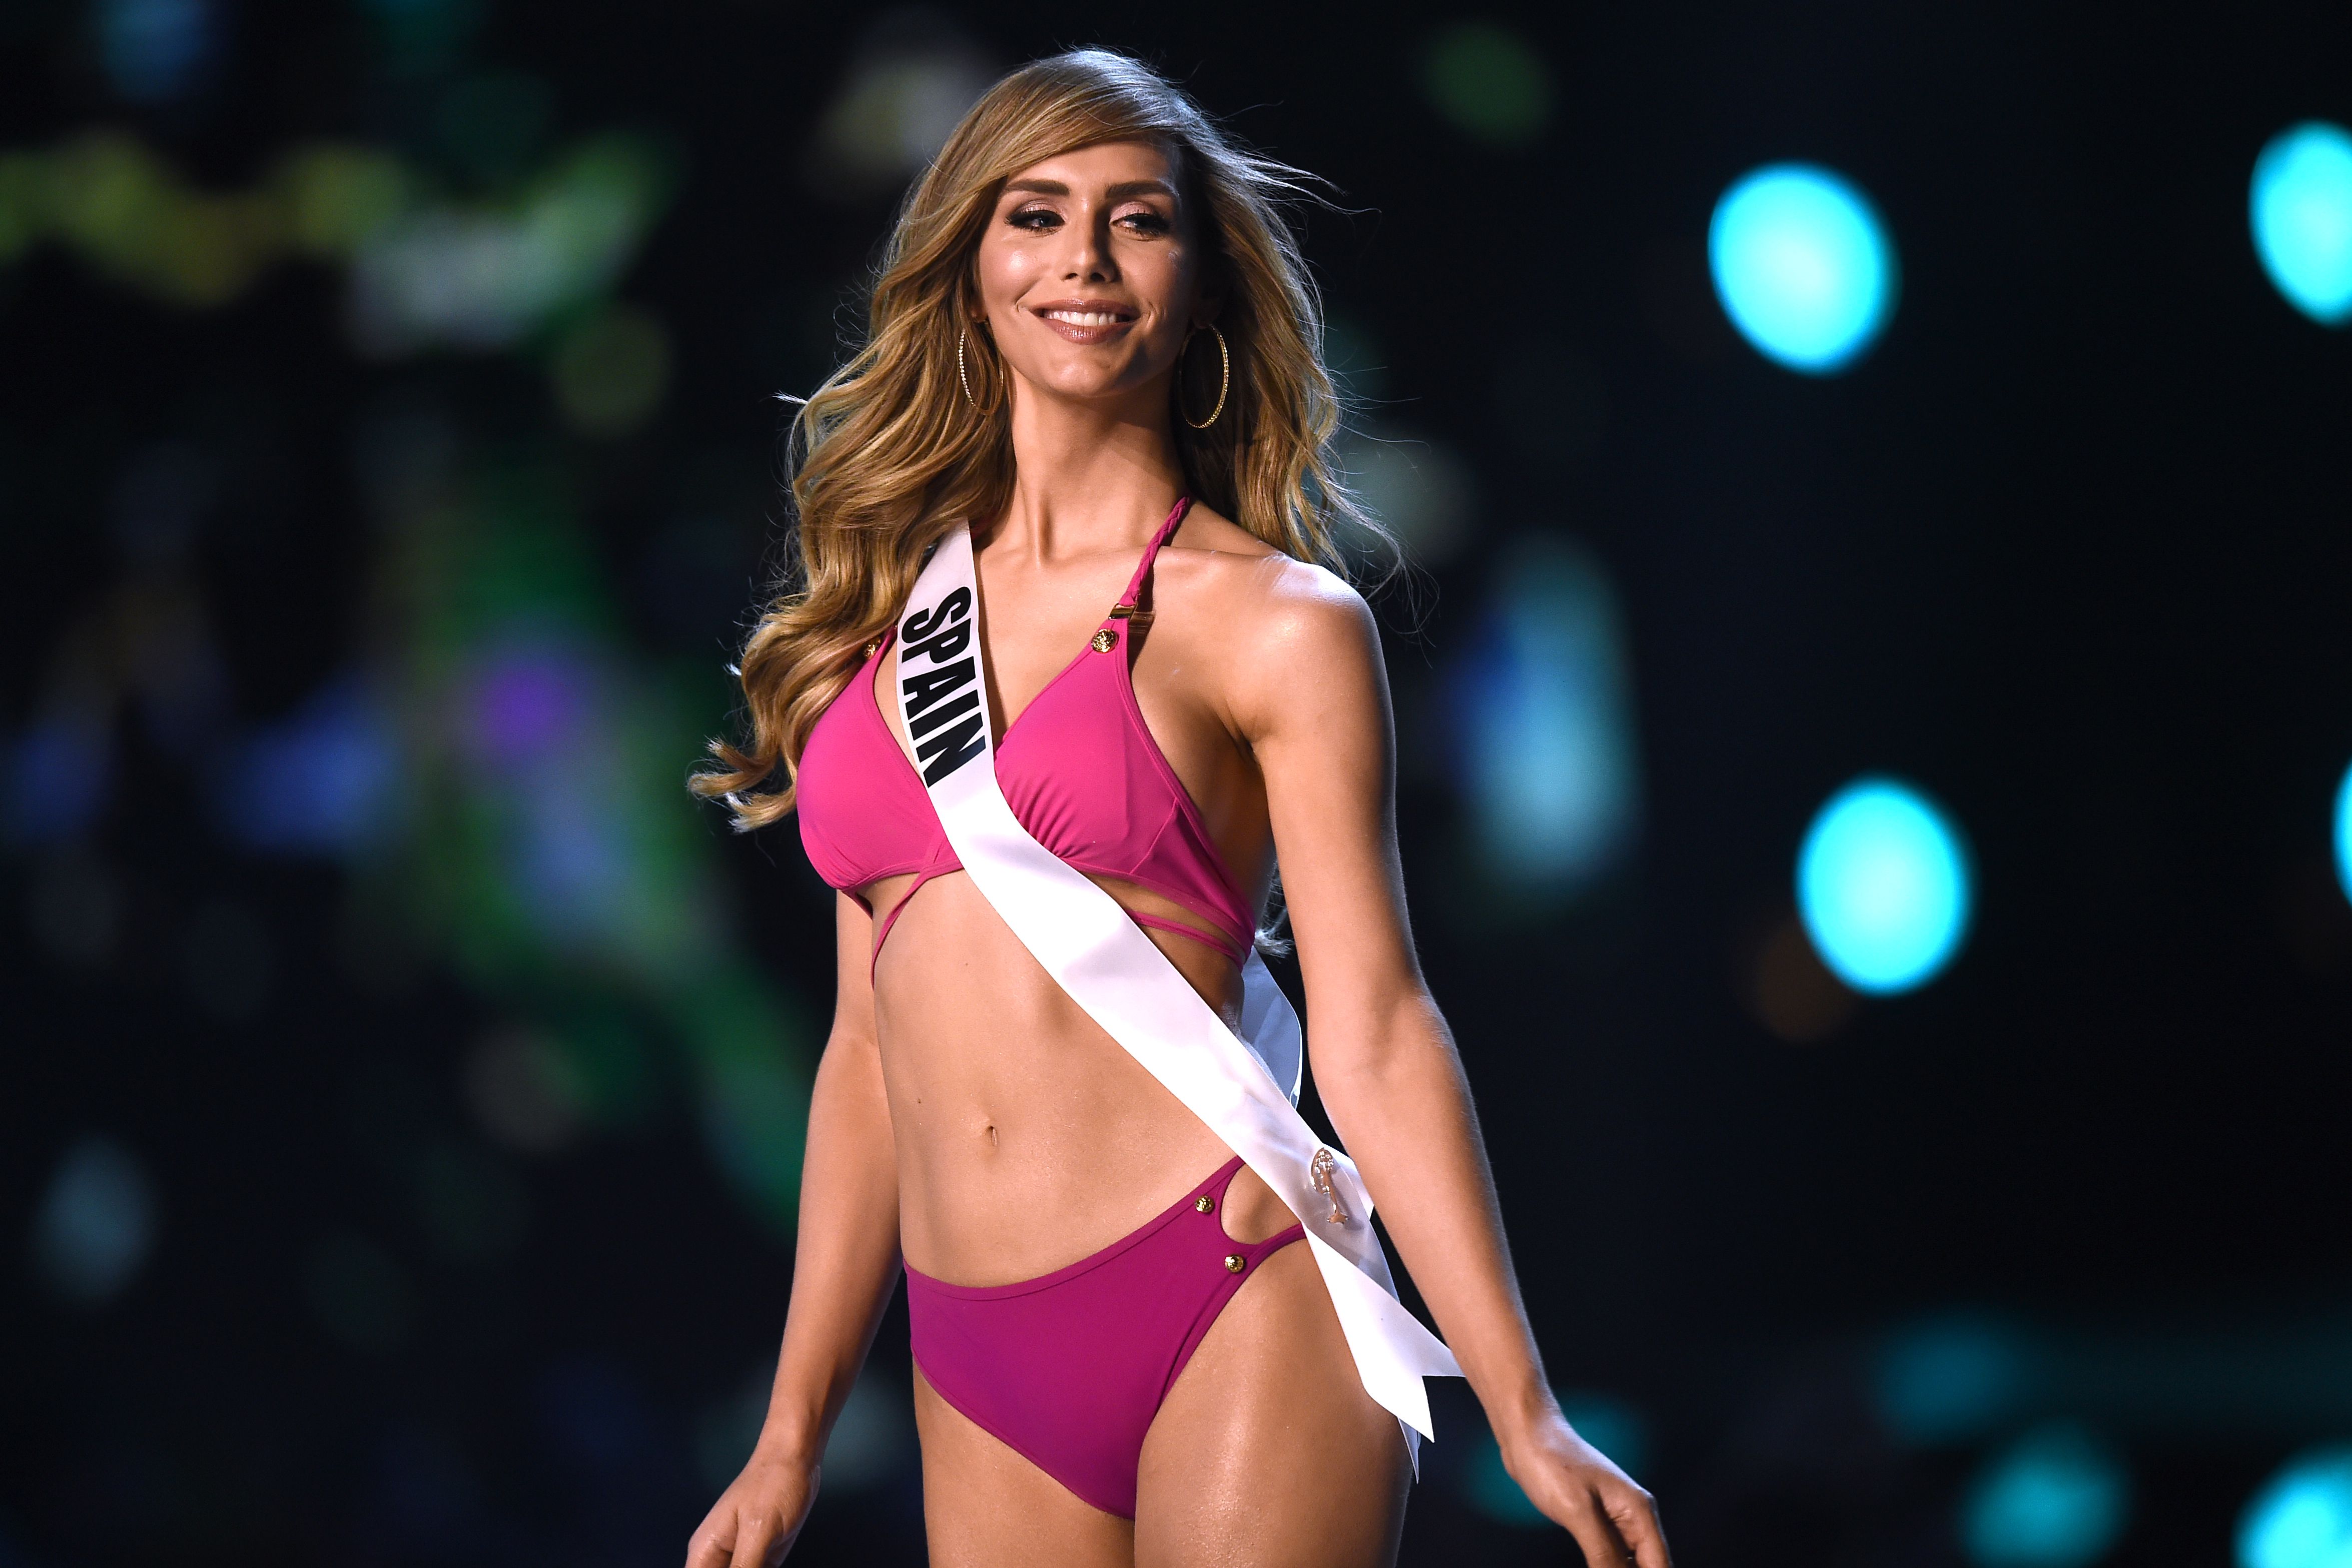 Ángela Ponce, la Miss España trans, recibe gran ovación en Miss